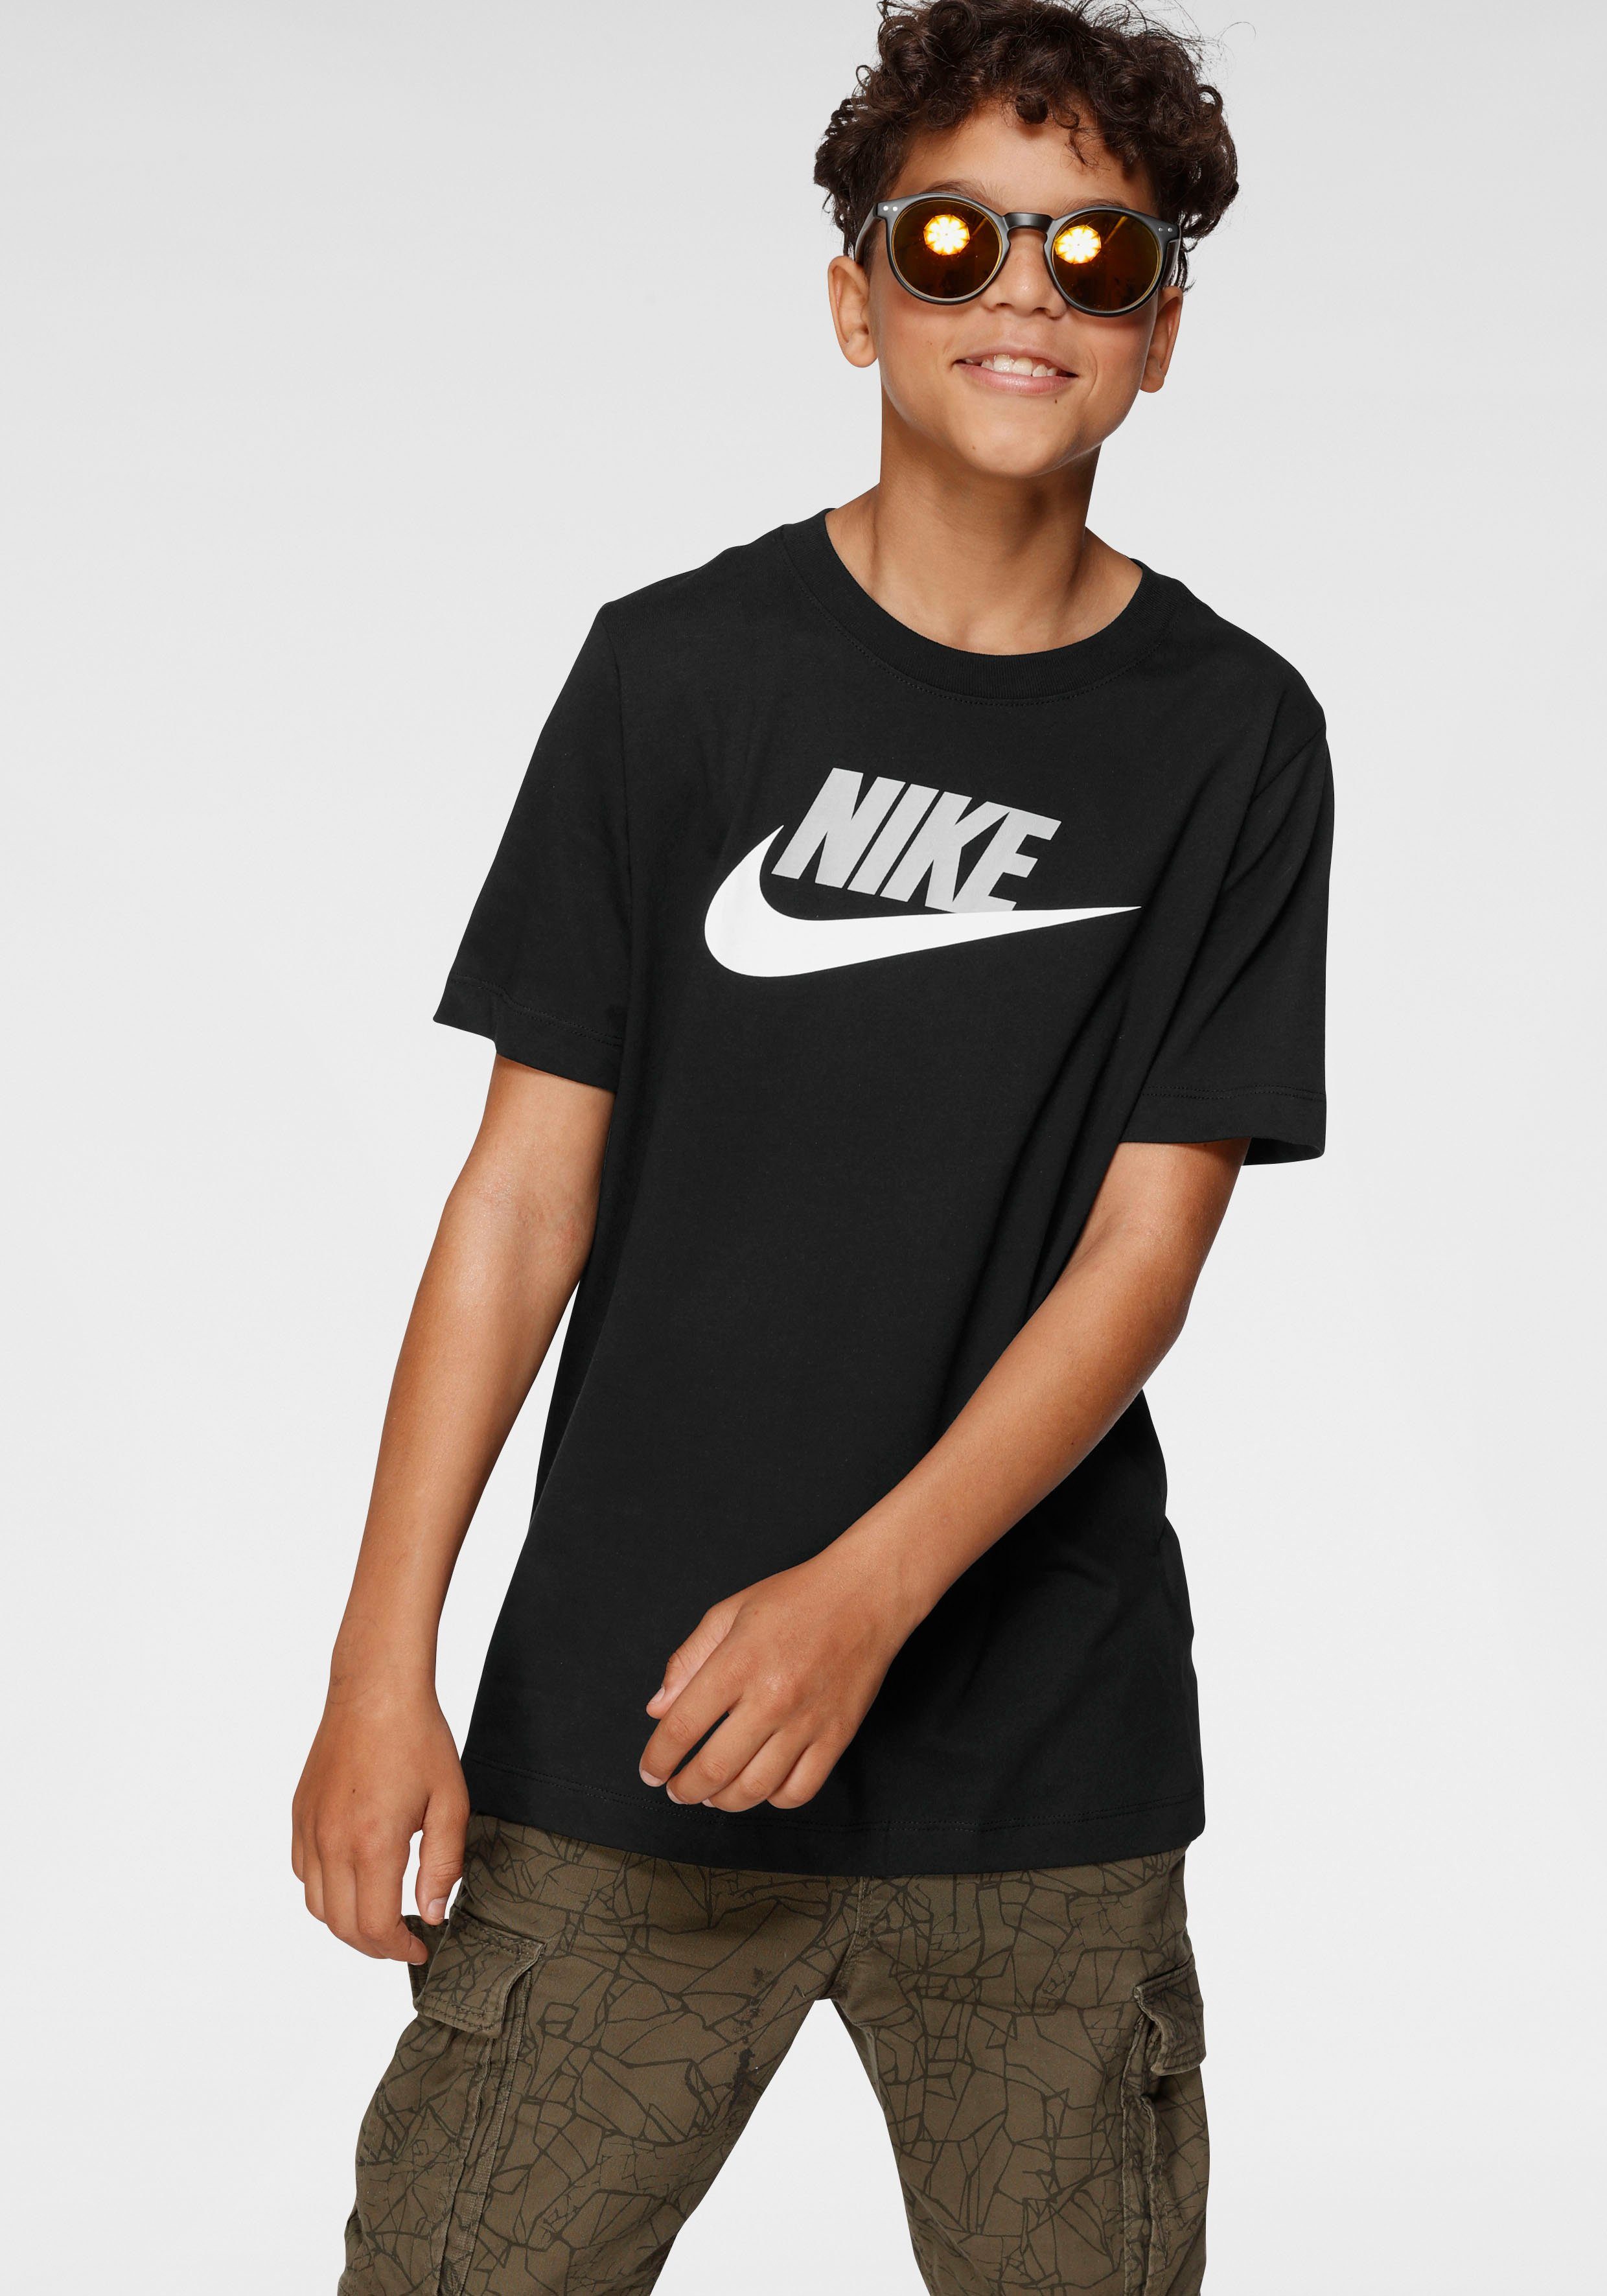 Nike Jungenshirts online kaufen | OTTO